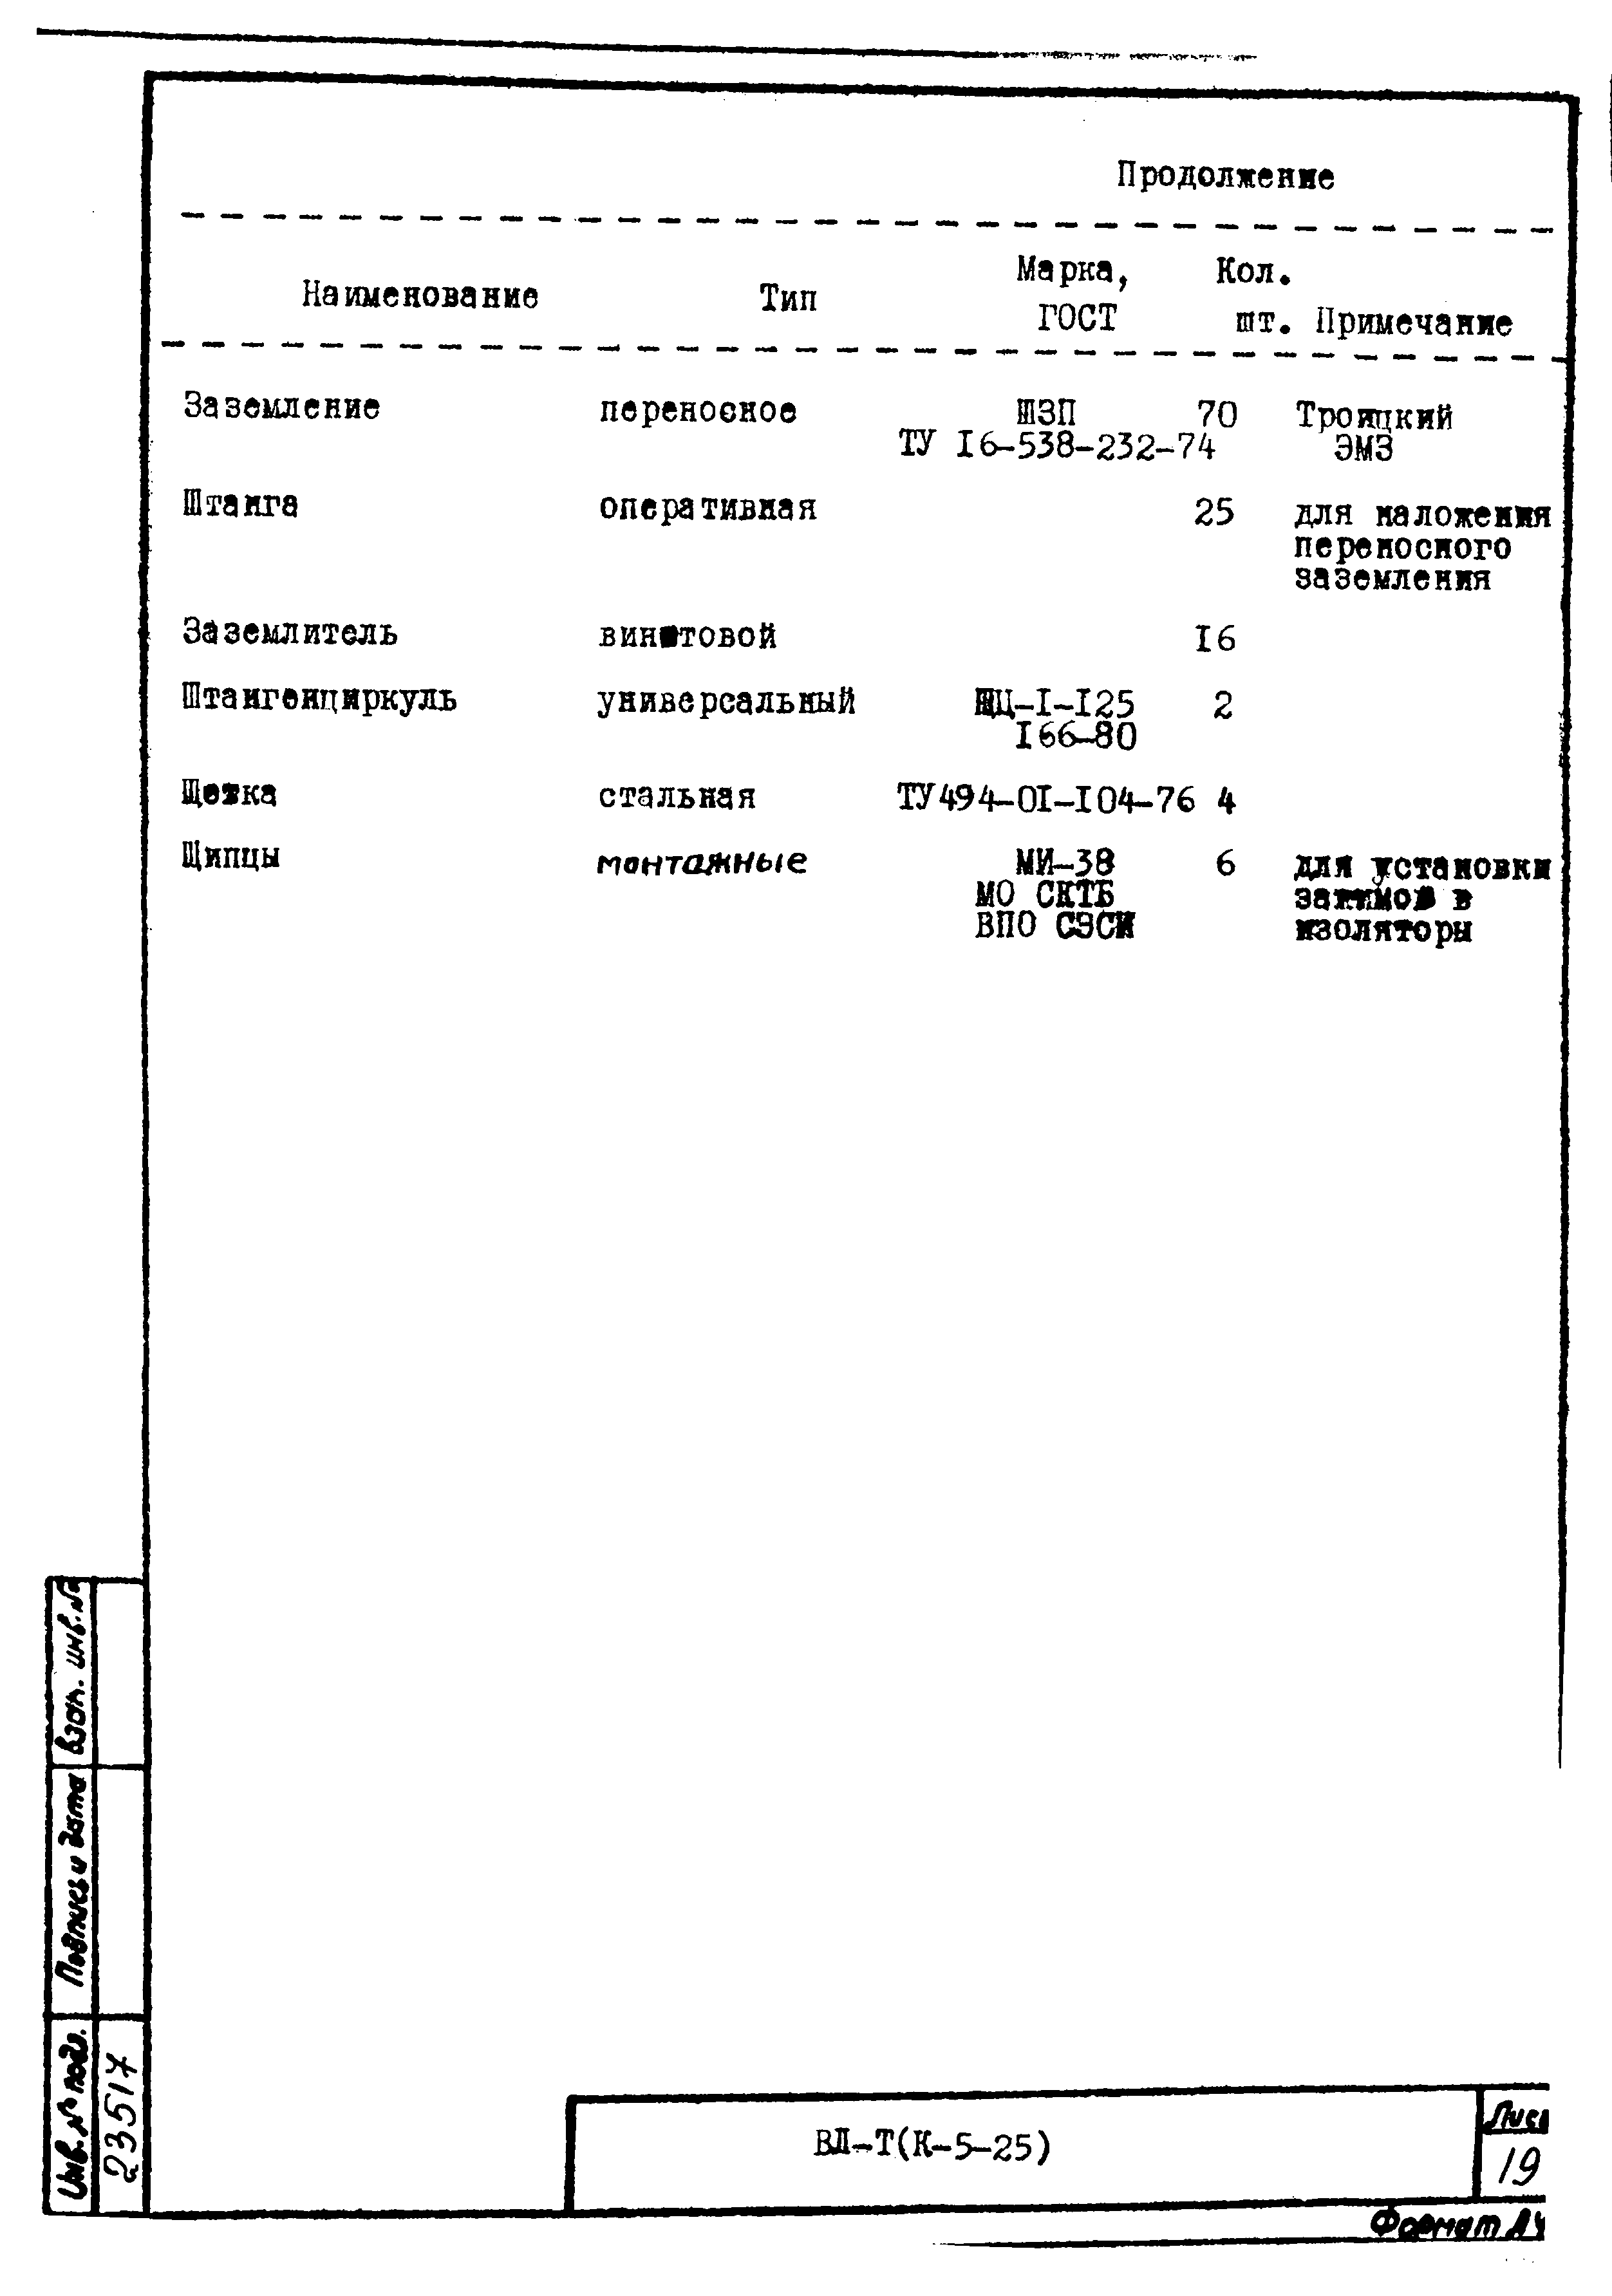 Технологическая карта К-5-25-7